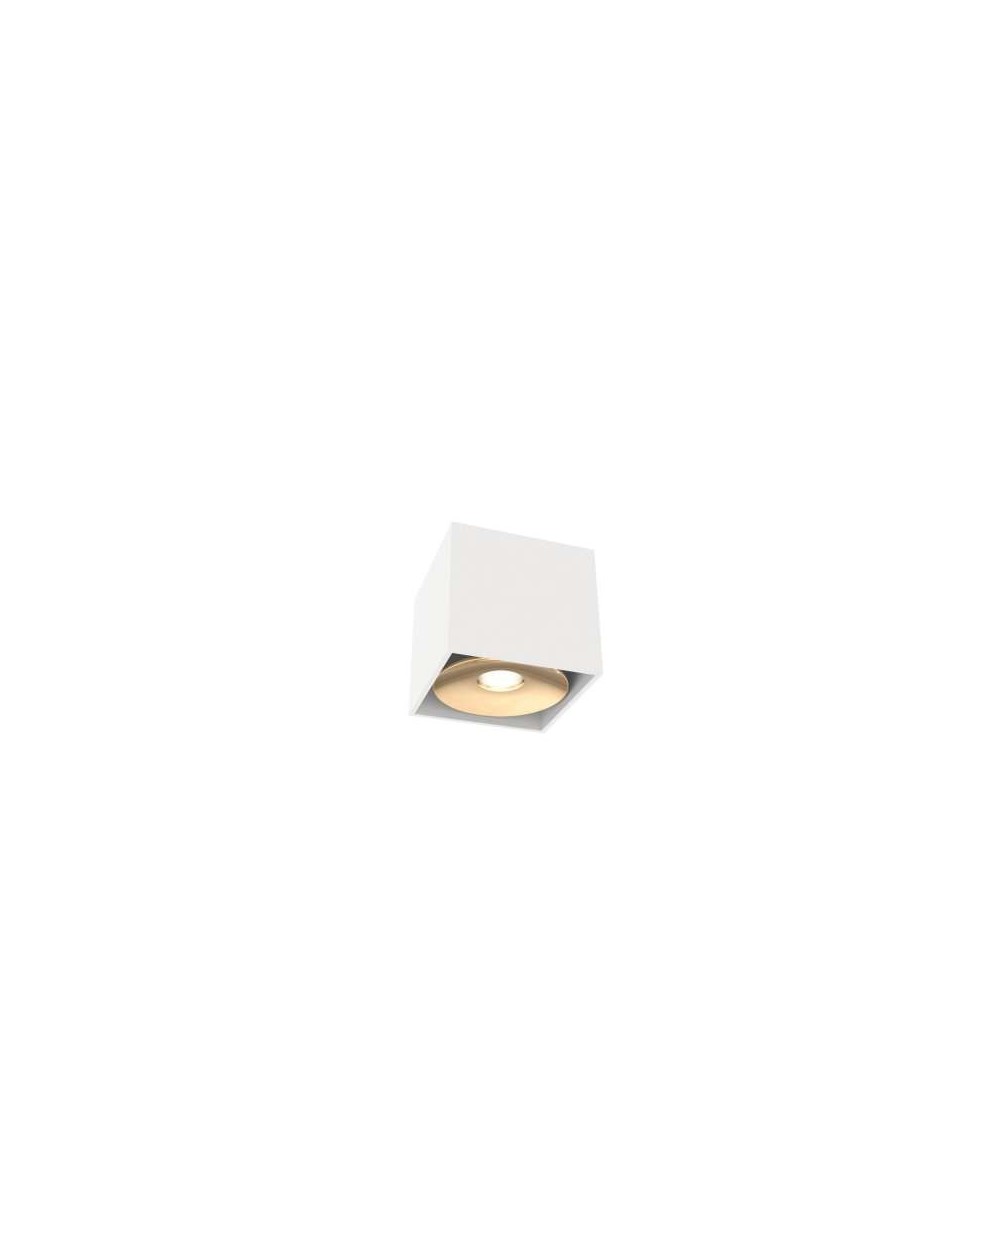 Oprawa natynkowa CARDI I Small Bianco/Gold - Orlicki Design w kolorze biało-złotym lampa natynkowa sufitowa